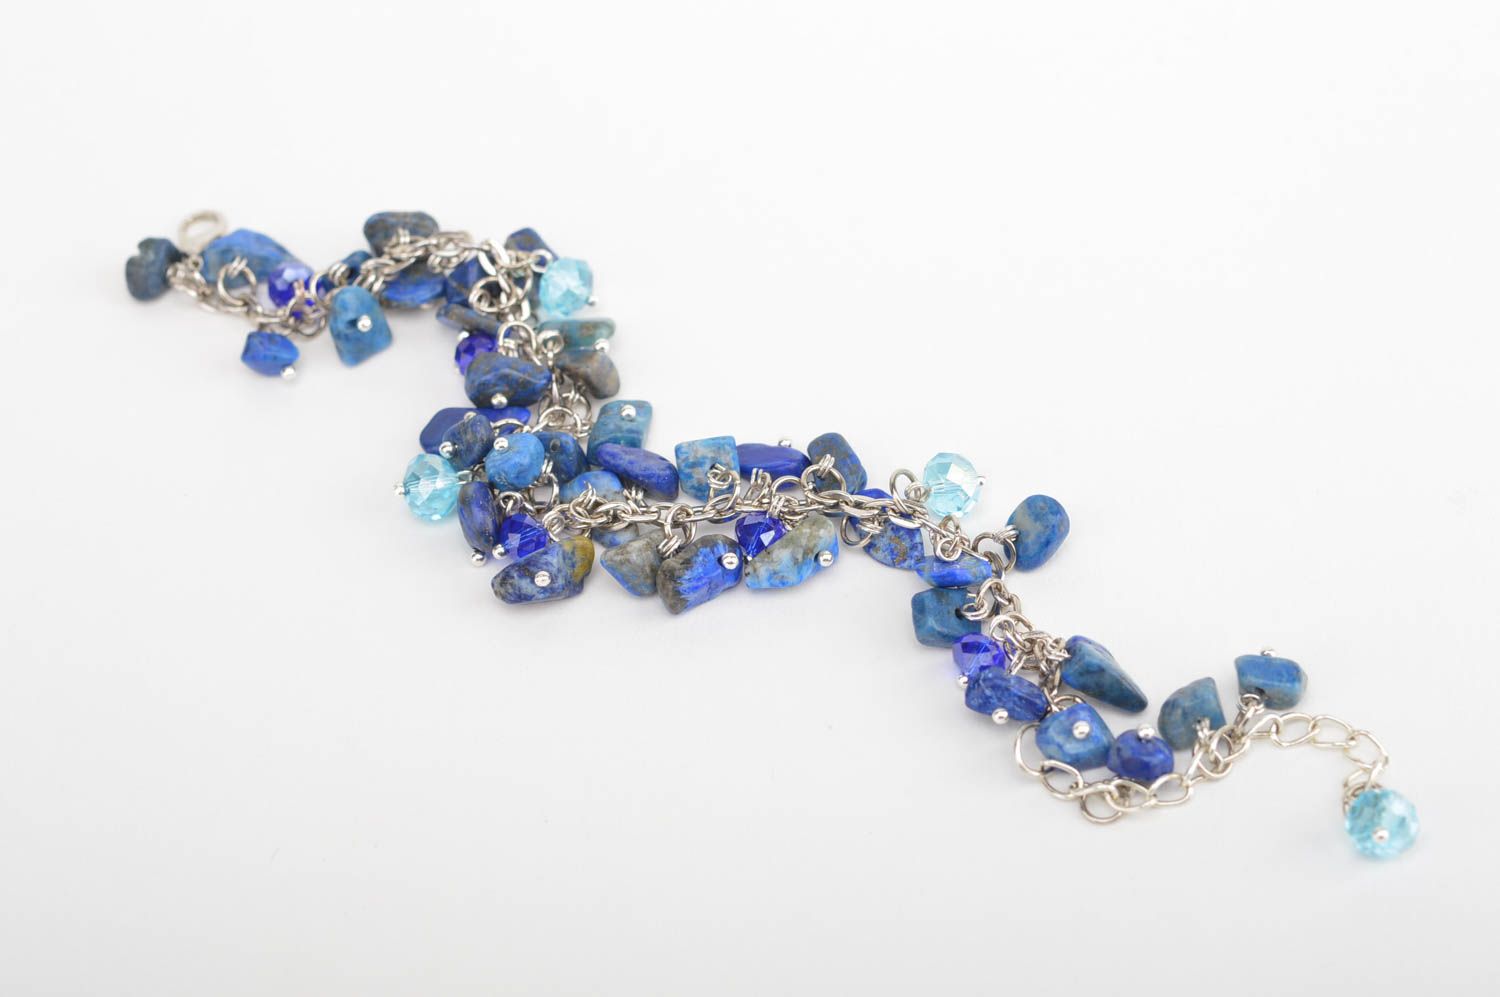 Handmade bracelet charm bracelet designer jewelry chain bracelet gifts for women photo 2